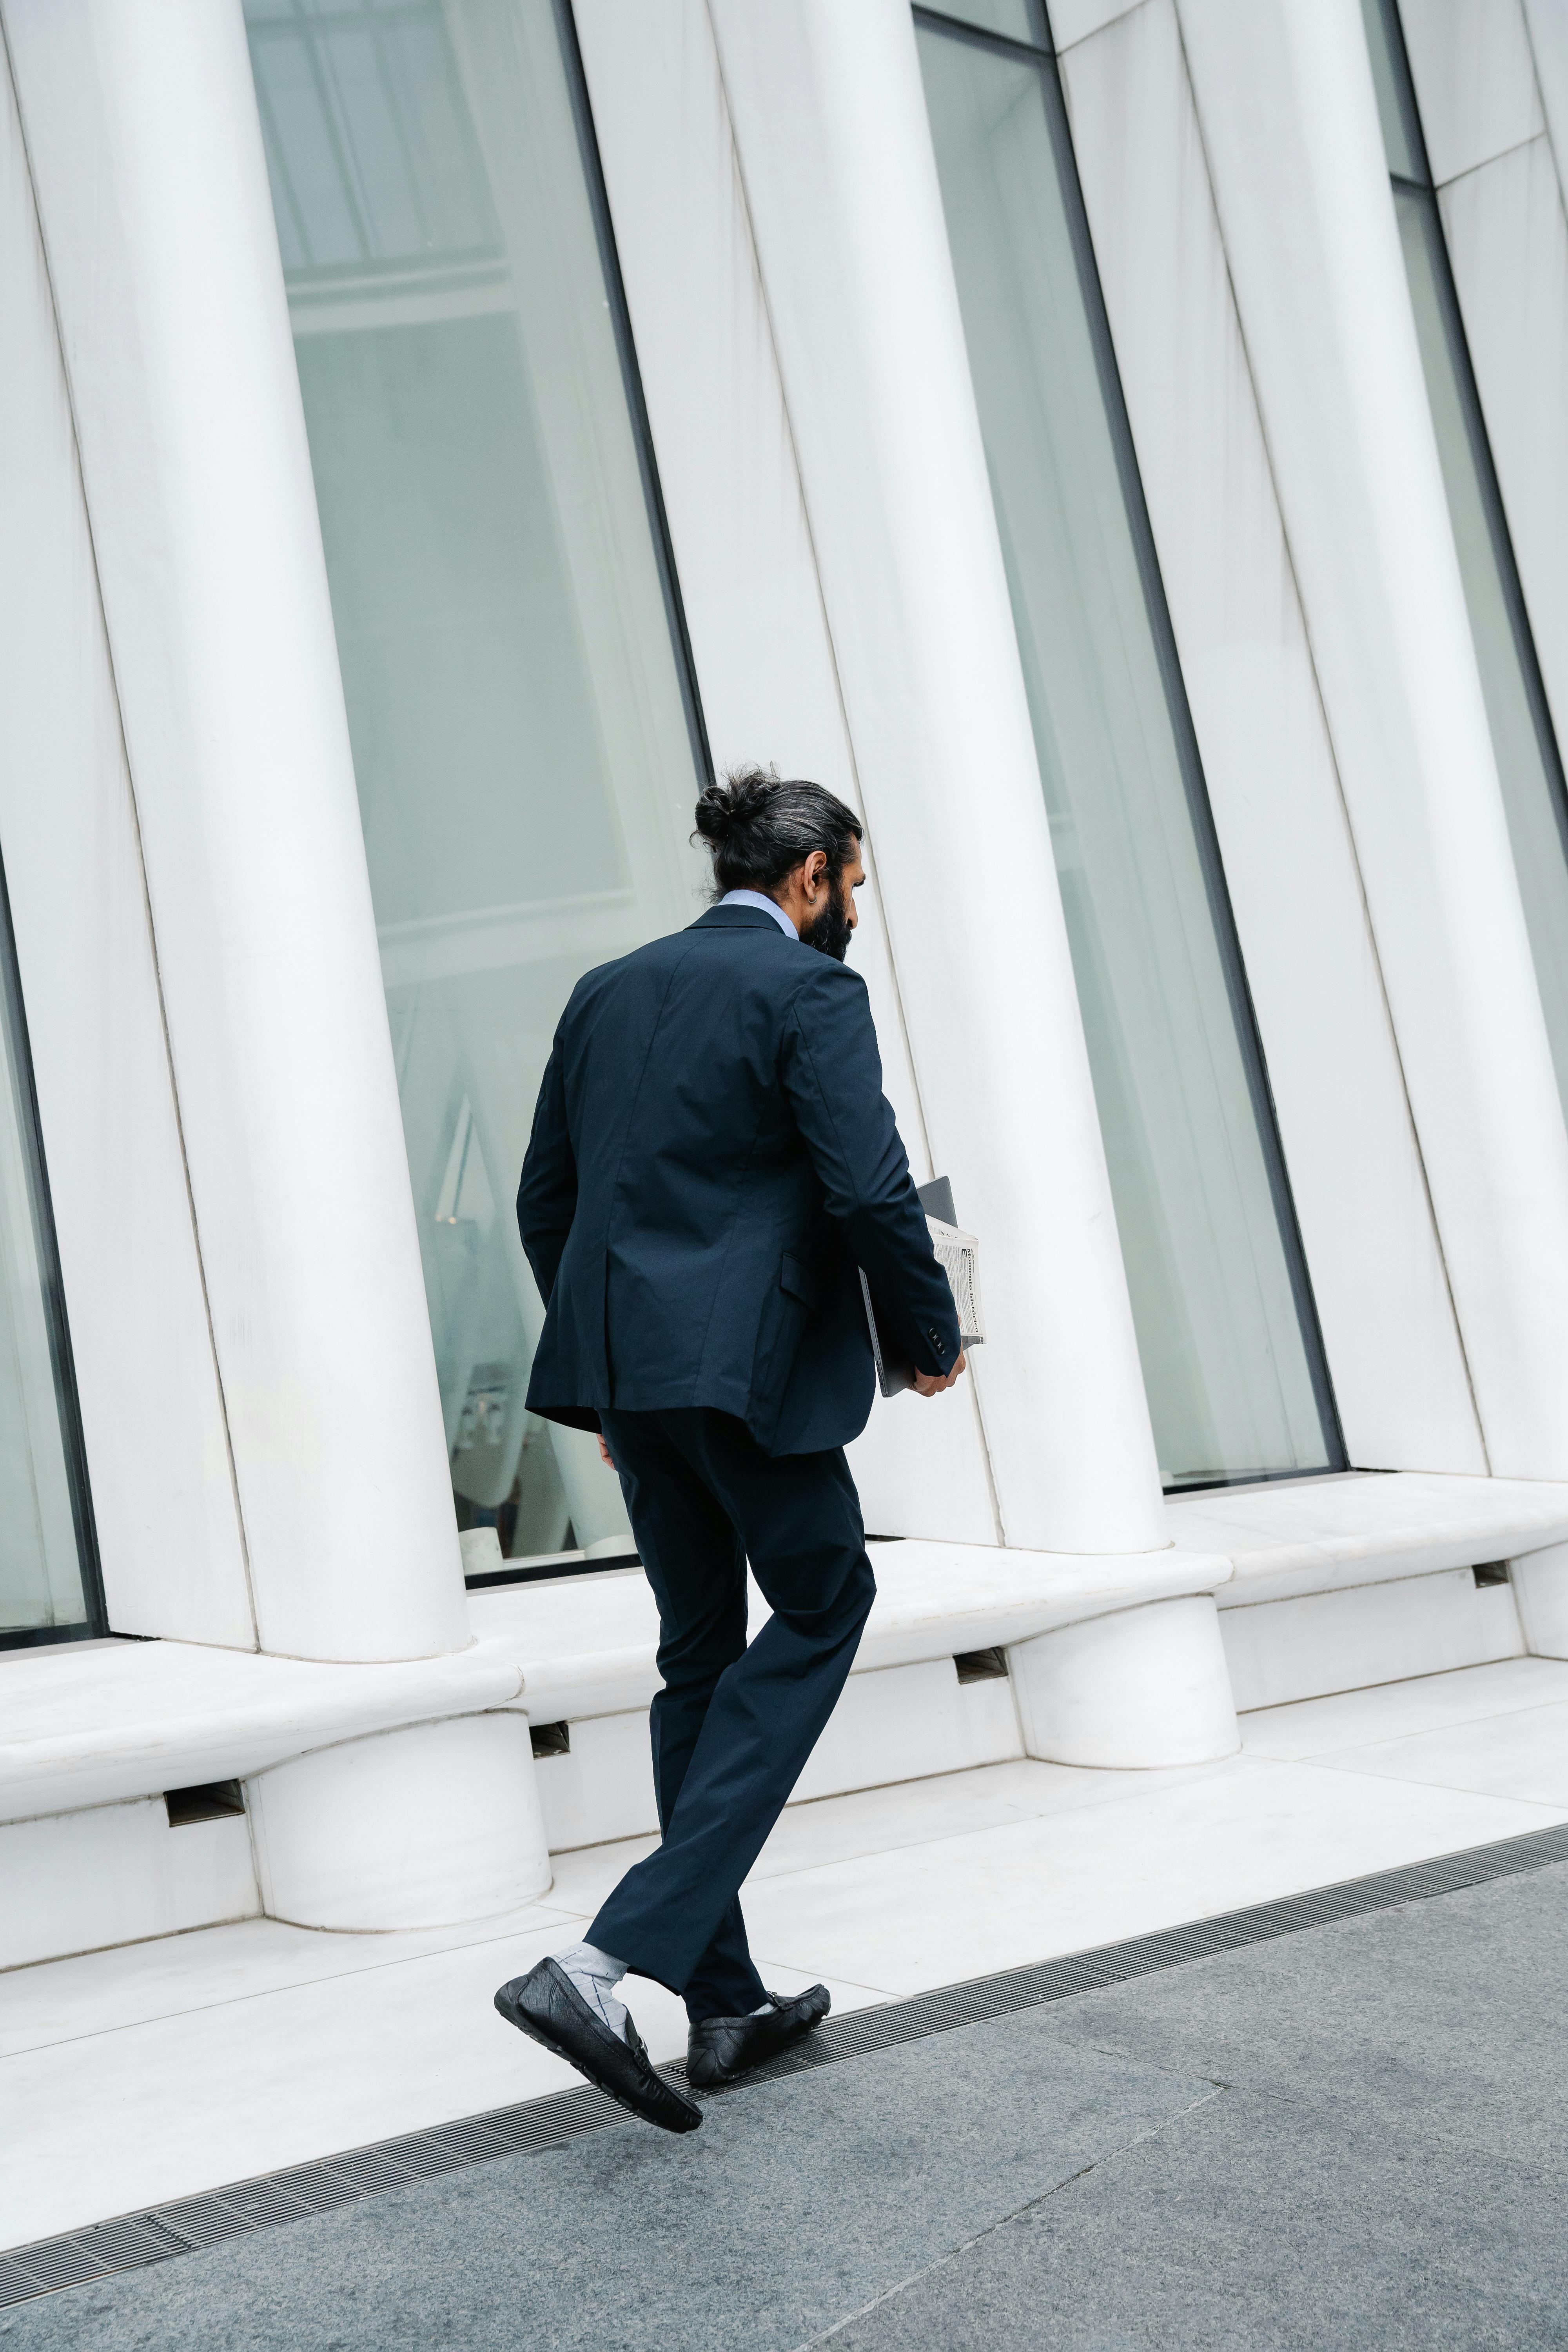 Man walking in Full Suit · Free Stock Photo